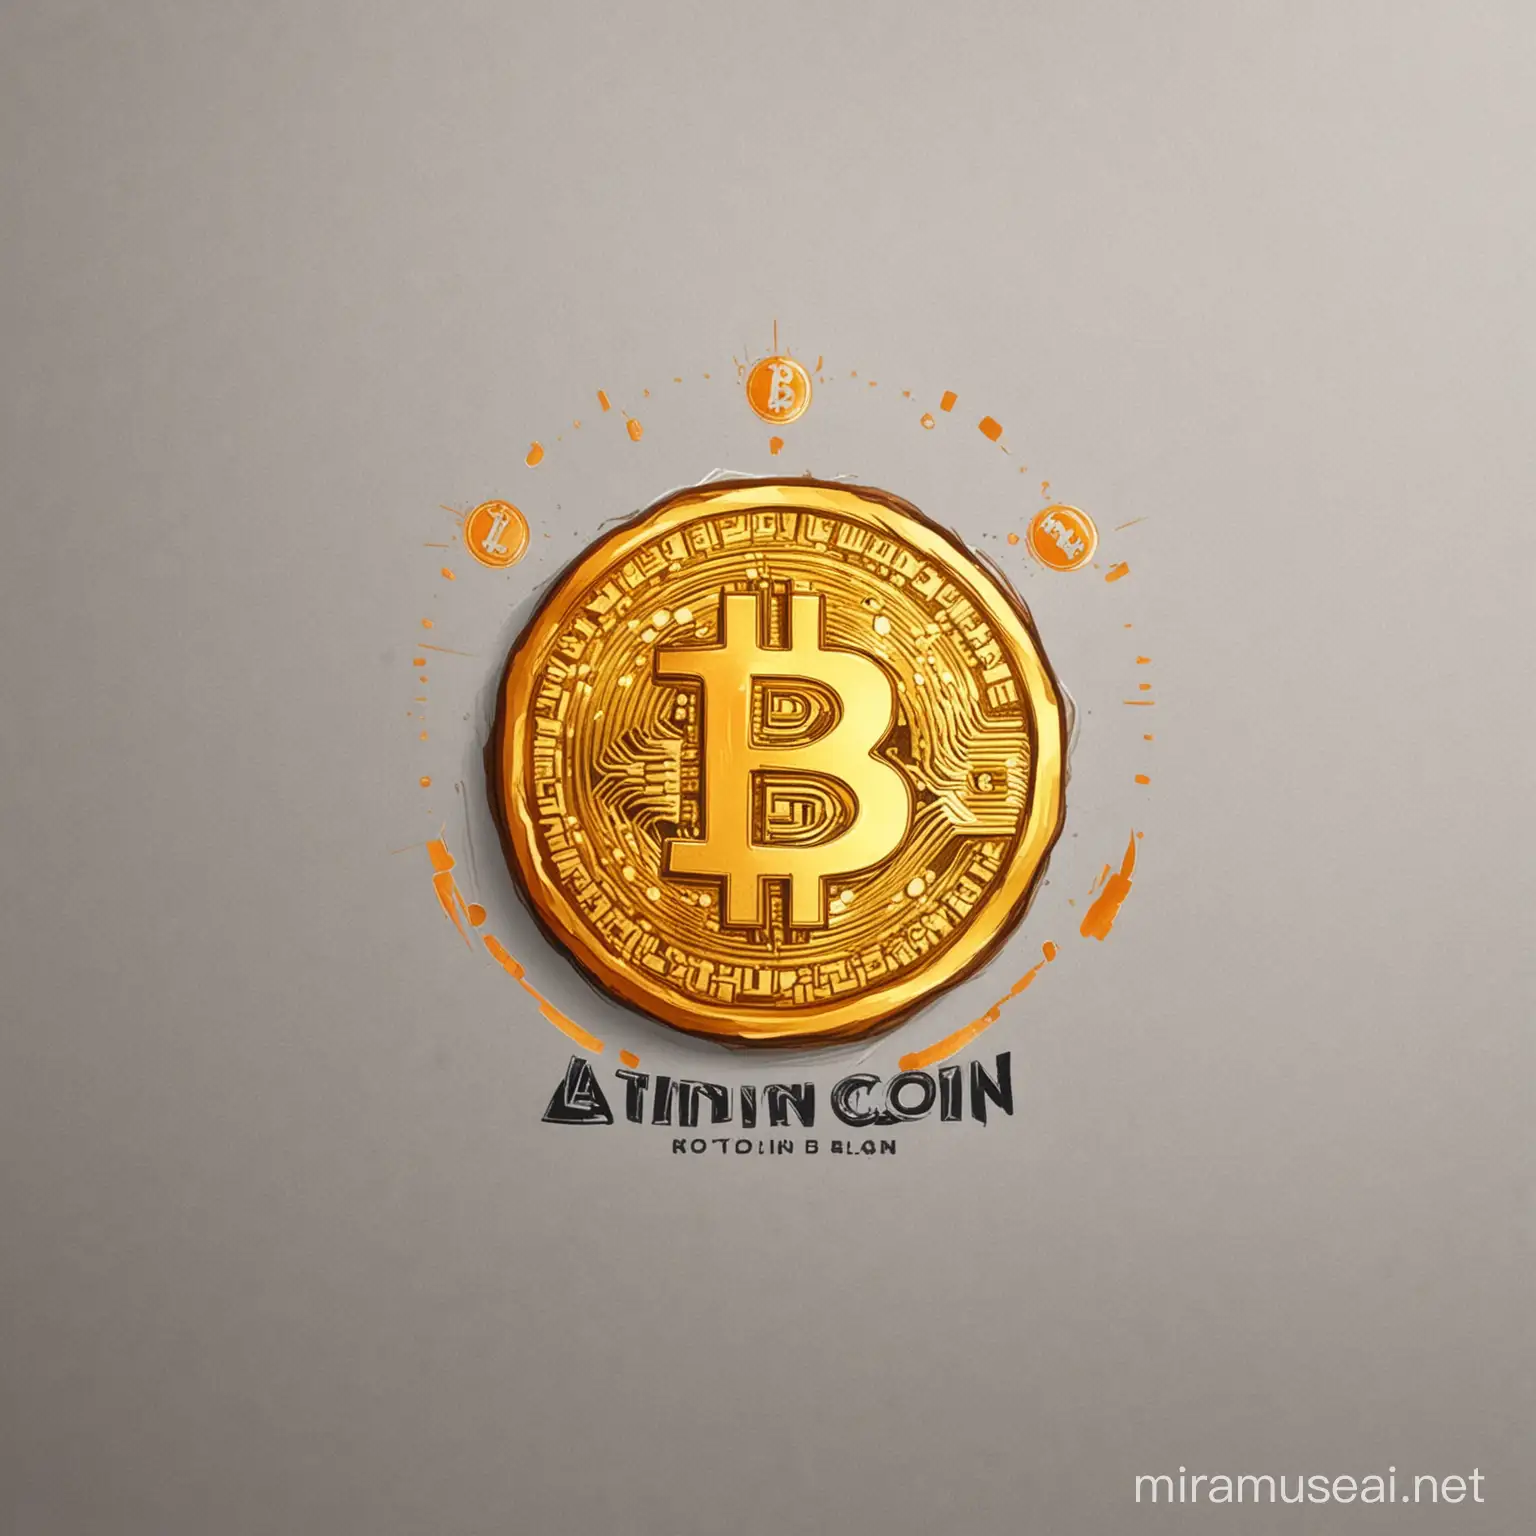 Dessinez un logo pour l'équipe d'investissement Bitcoin appelée "Làng Coin Investment "